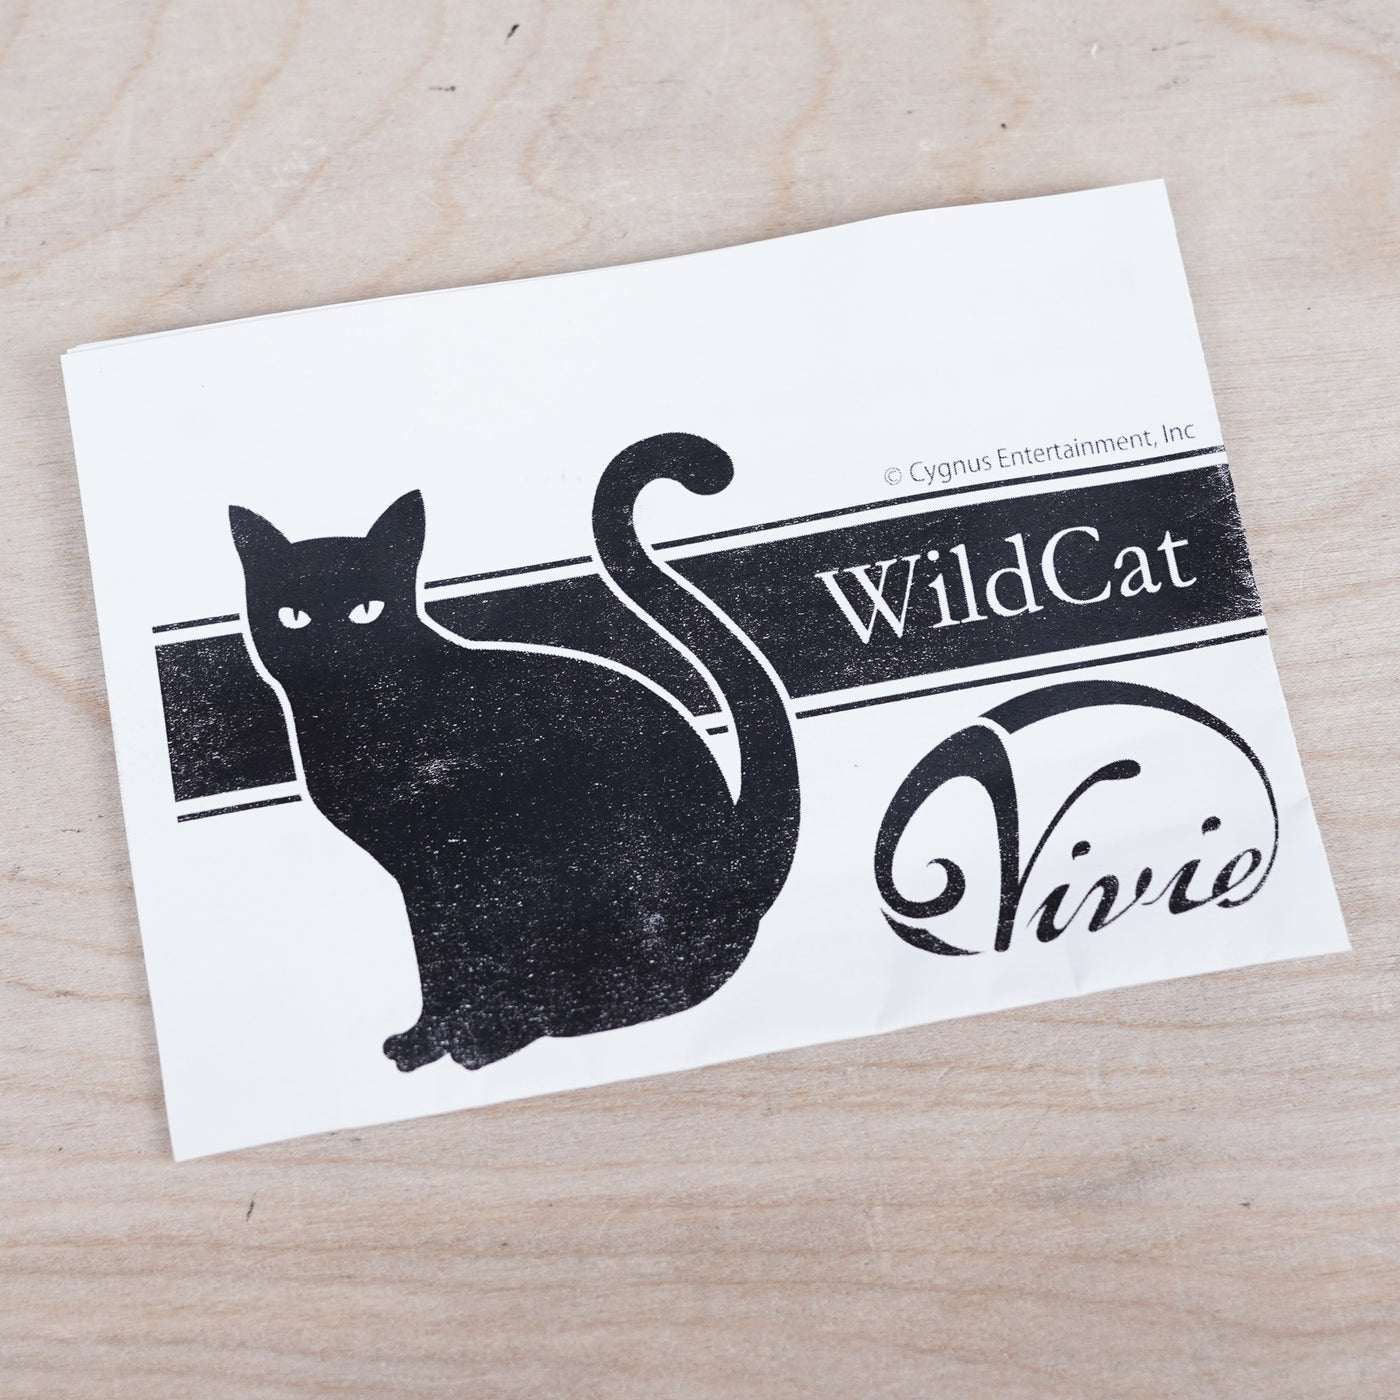 Vivie WildCat OverDrive